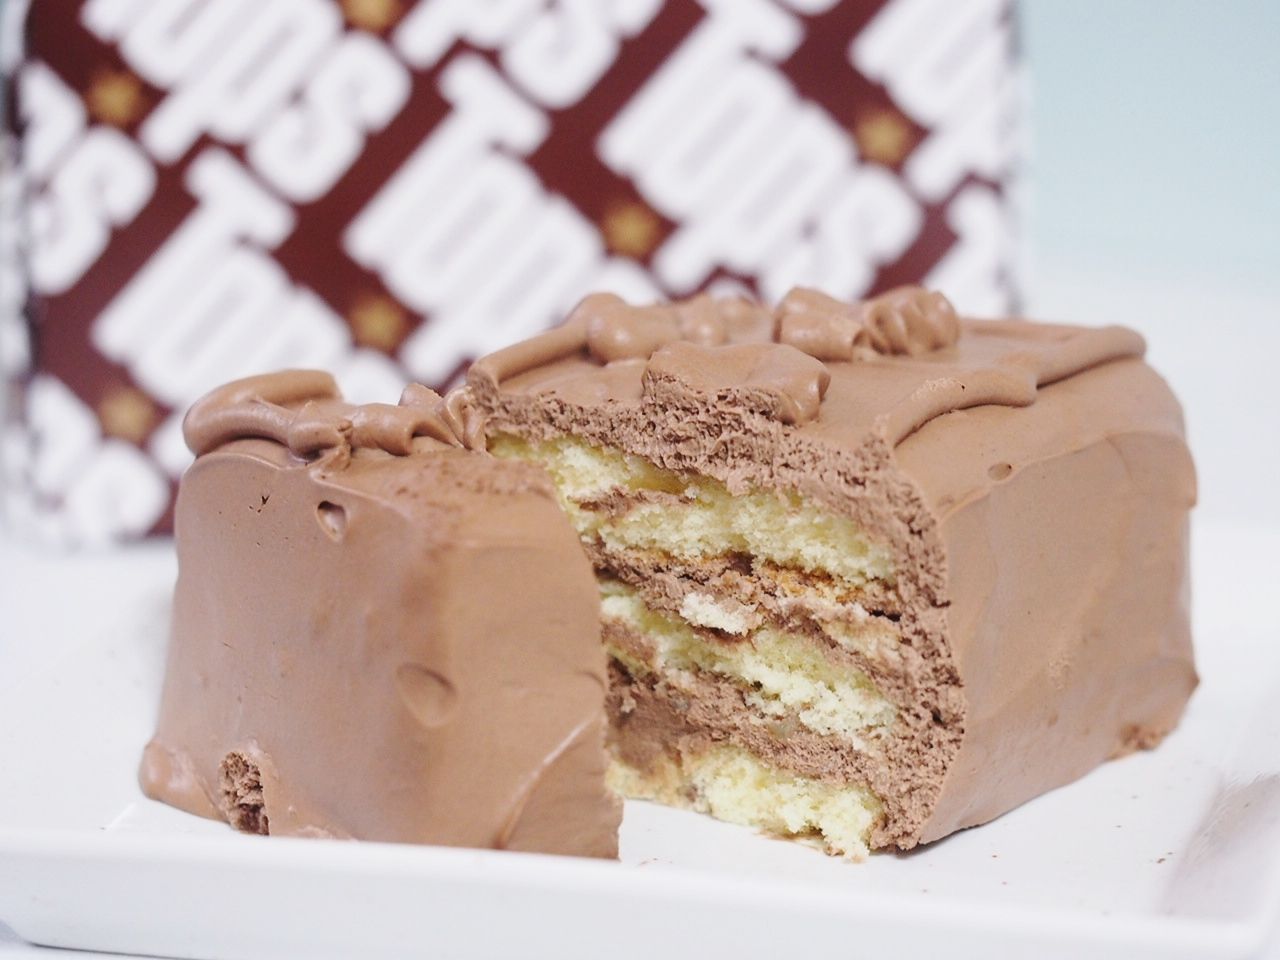 関西でも買えるトップス Top S のチョコレートケーキを堪能 スイーツハンター月ウサギの食べ日記 Powered By ライブドアブログ